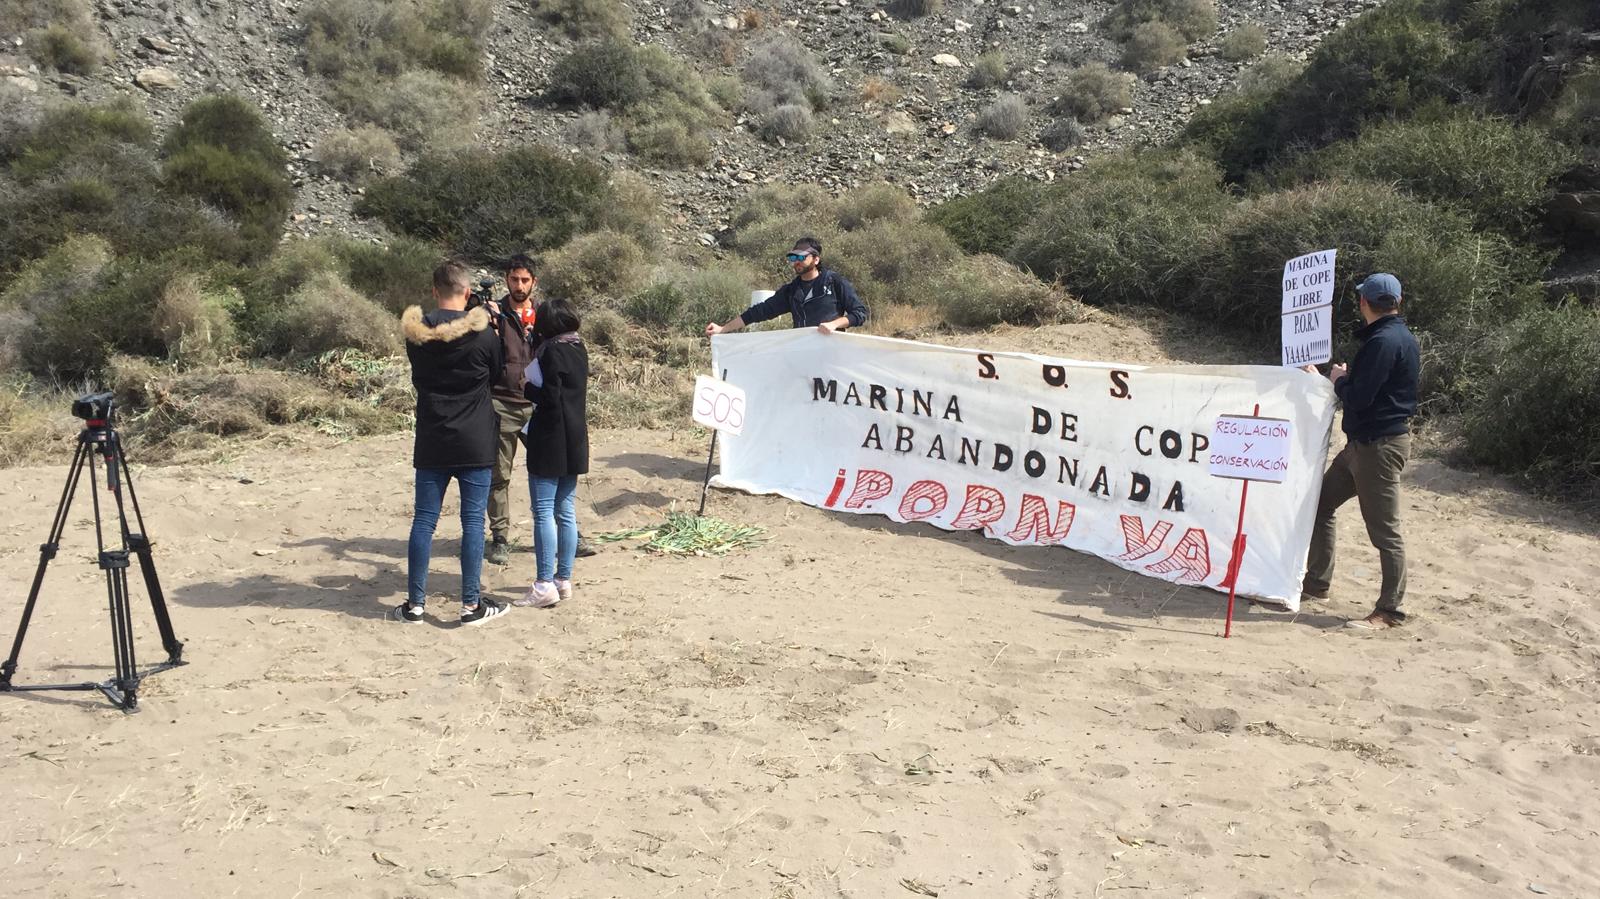 Miembros de Naturactúa y Ecologistas en Acción han desplegado una pancarta en la zona, como acto de protesta y condena a estos hechos. Imagen: Naturactúa